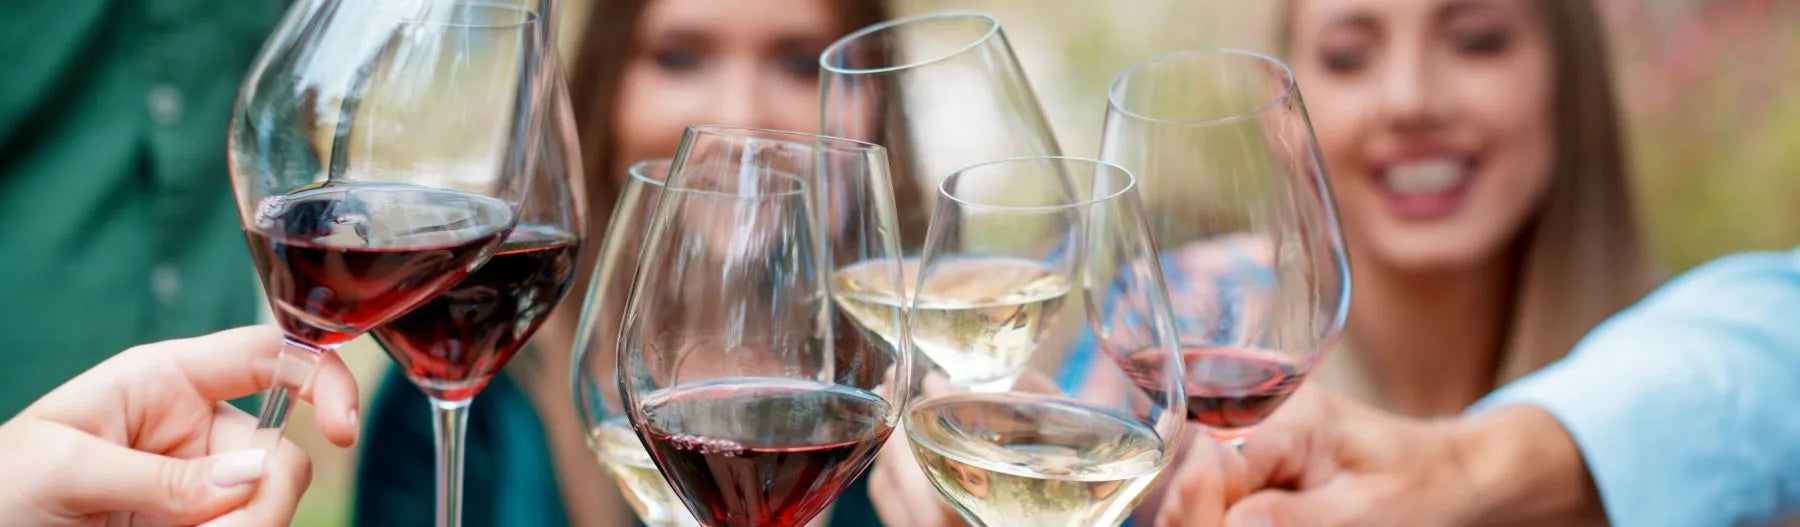 Alcoholvrije wijn: ontdek onze collectie halal alcoholvrije wijn: alcoholvrije rode wijn, alcoholvrije rosé wijn en alcoholvrije witte wijn.